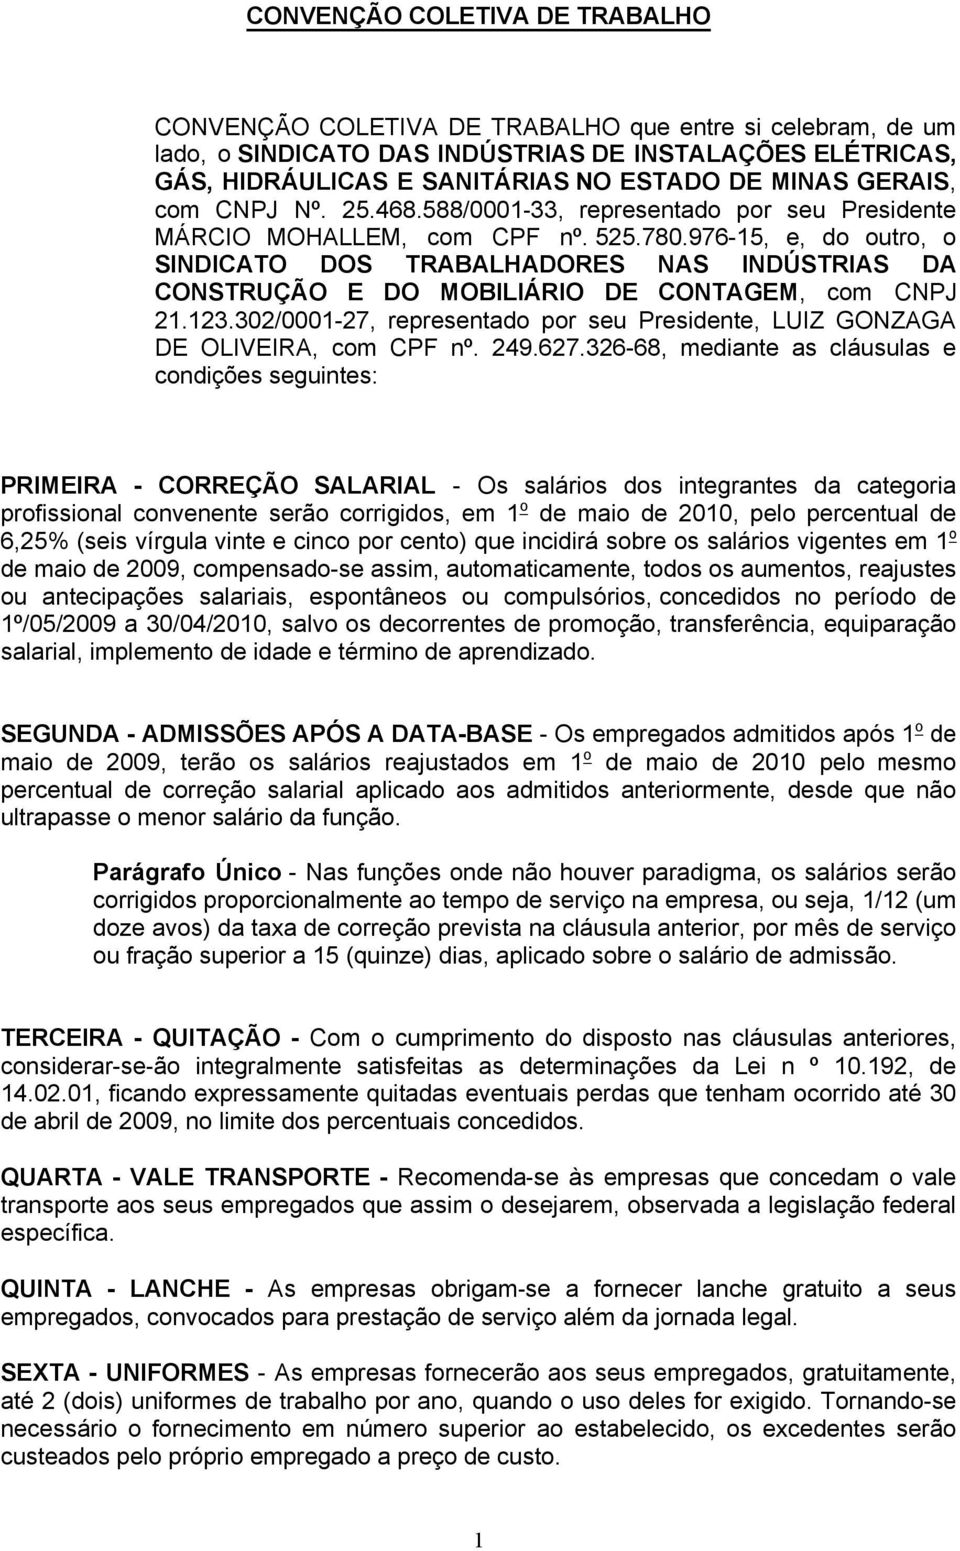 976-15, e, do outro, o SINDICATO DOS TRABALHADORES NAS INDÚSTRIAS DA CONSTRUÇÃO E DO MOBILIÁRIO DE CONTAGEM, com CNPJ 21.123.